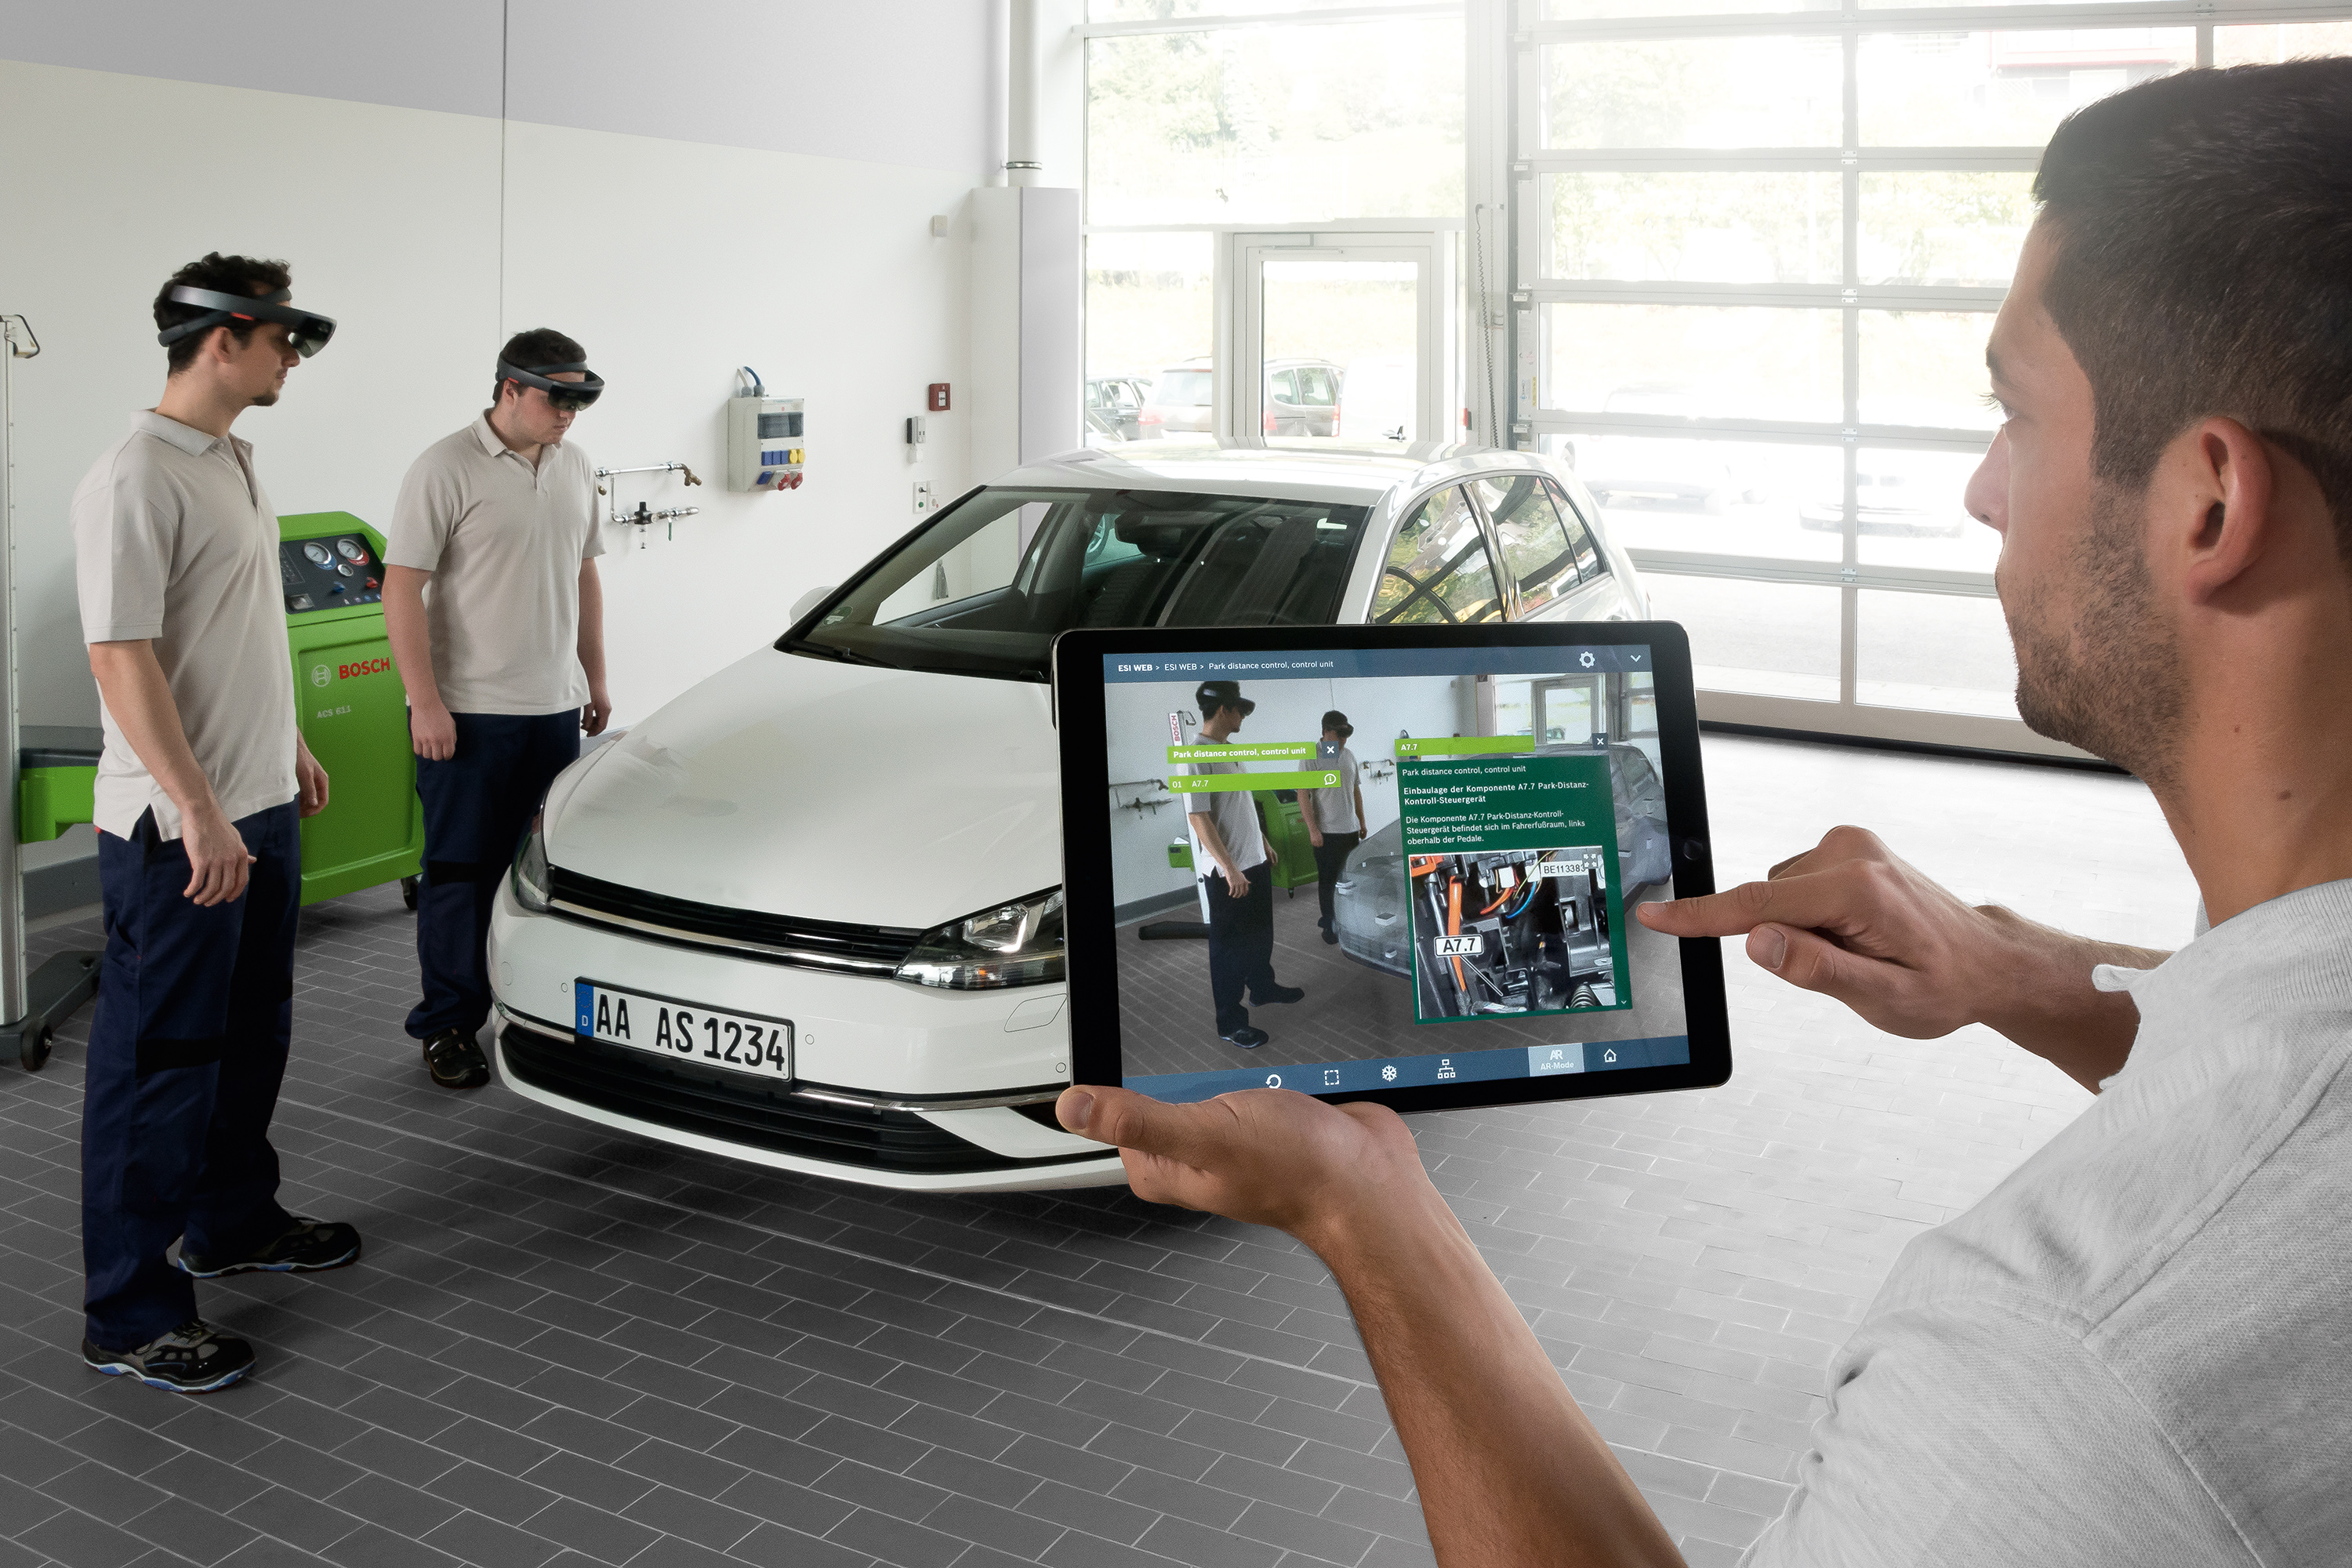 Bosch oferă instruire în mecatronică automotive utilizând tehnologia inovatoare a Realității Augmentate